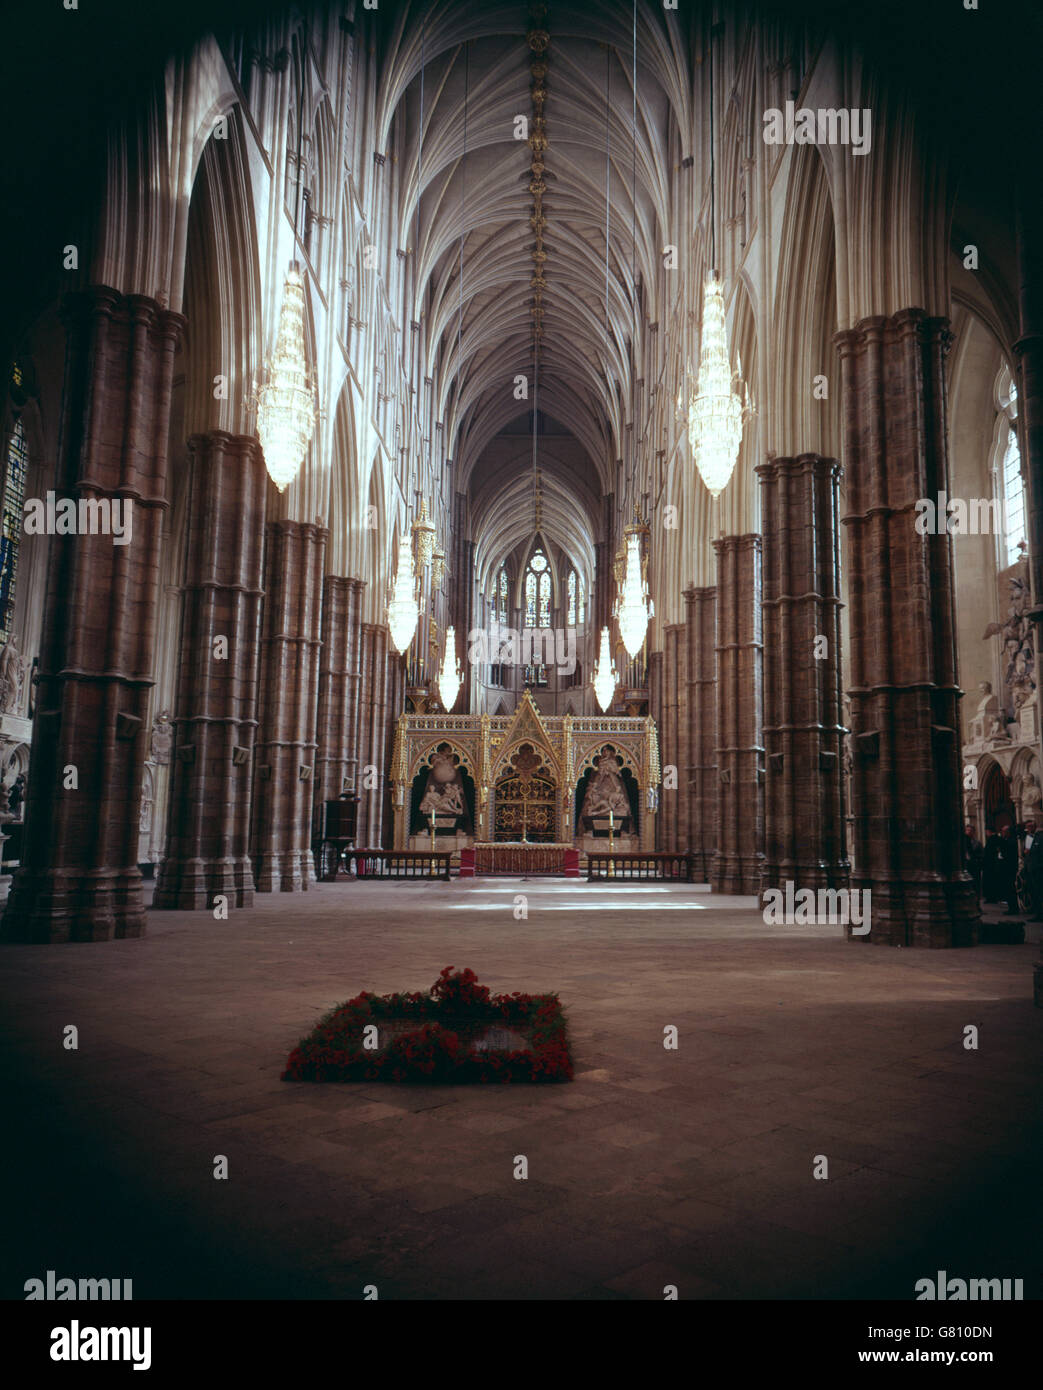 Edificios y Monumentos - Westminster Abbey - Londres. Disparo interno de la Abadía de Westminster, mostrando la tumba del Guerrero Desconocido. Foto de stock